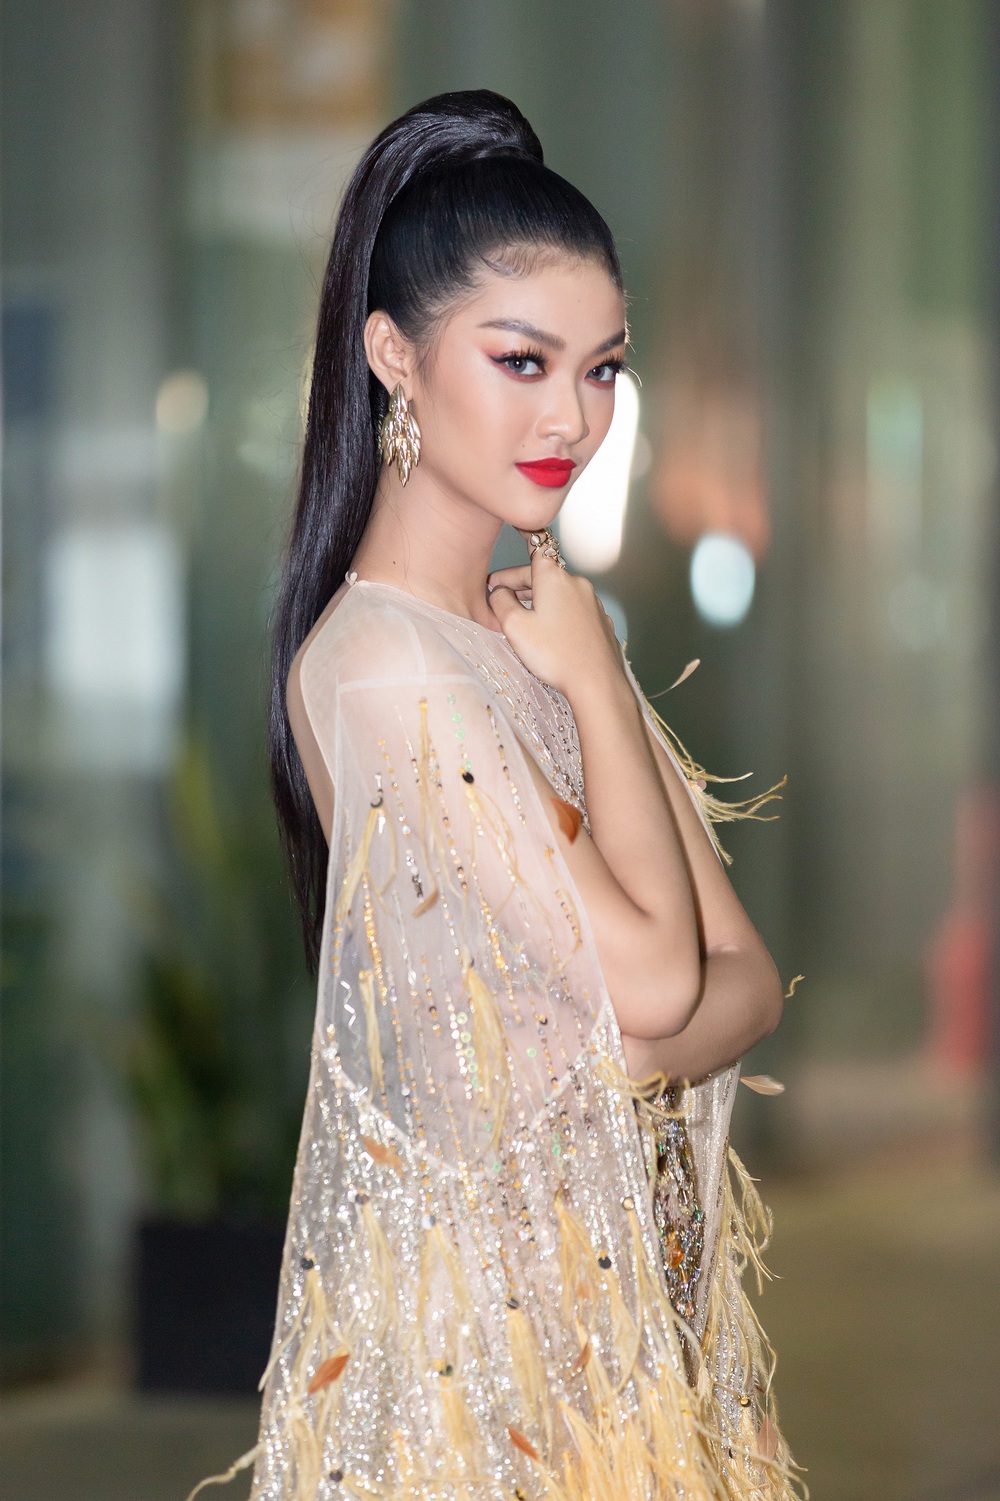 Hoa hậu Lương Thùy Linh vấp ngã trên thảm đỏ - Ảnh 11.